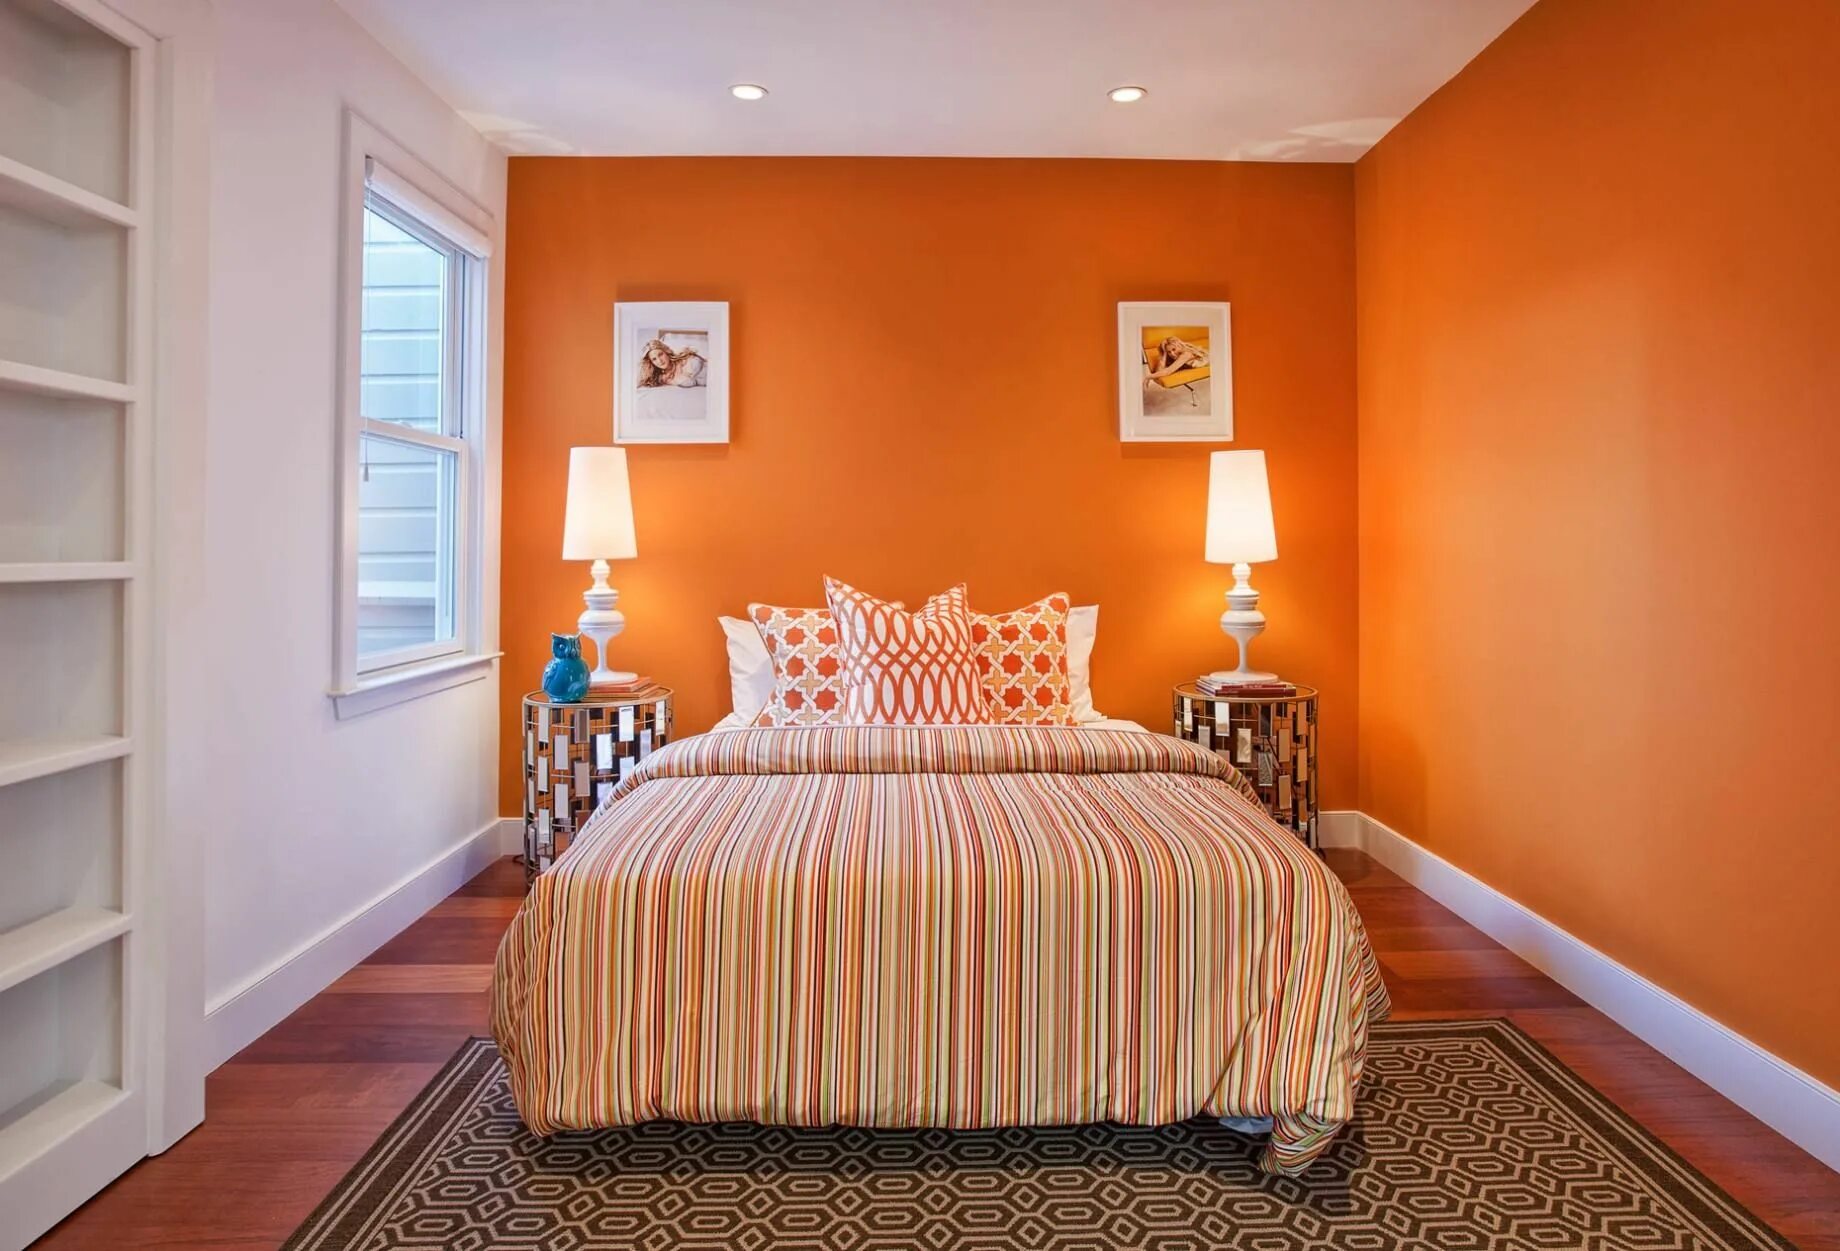 Room tone. Спальня в оранжевых тонах. Оранжевый цвет в интерьере. Цвет стен в спальне. Комната с оранжевыми стенами.